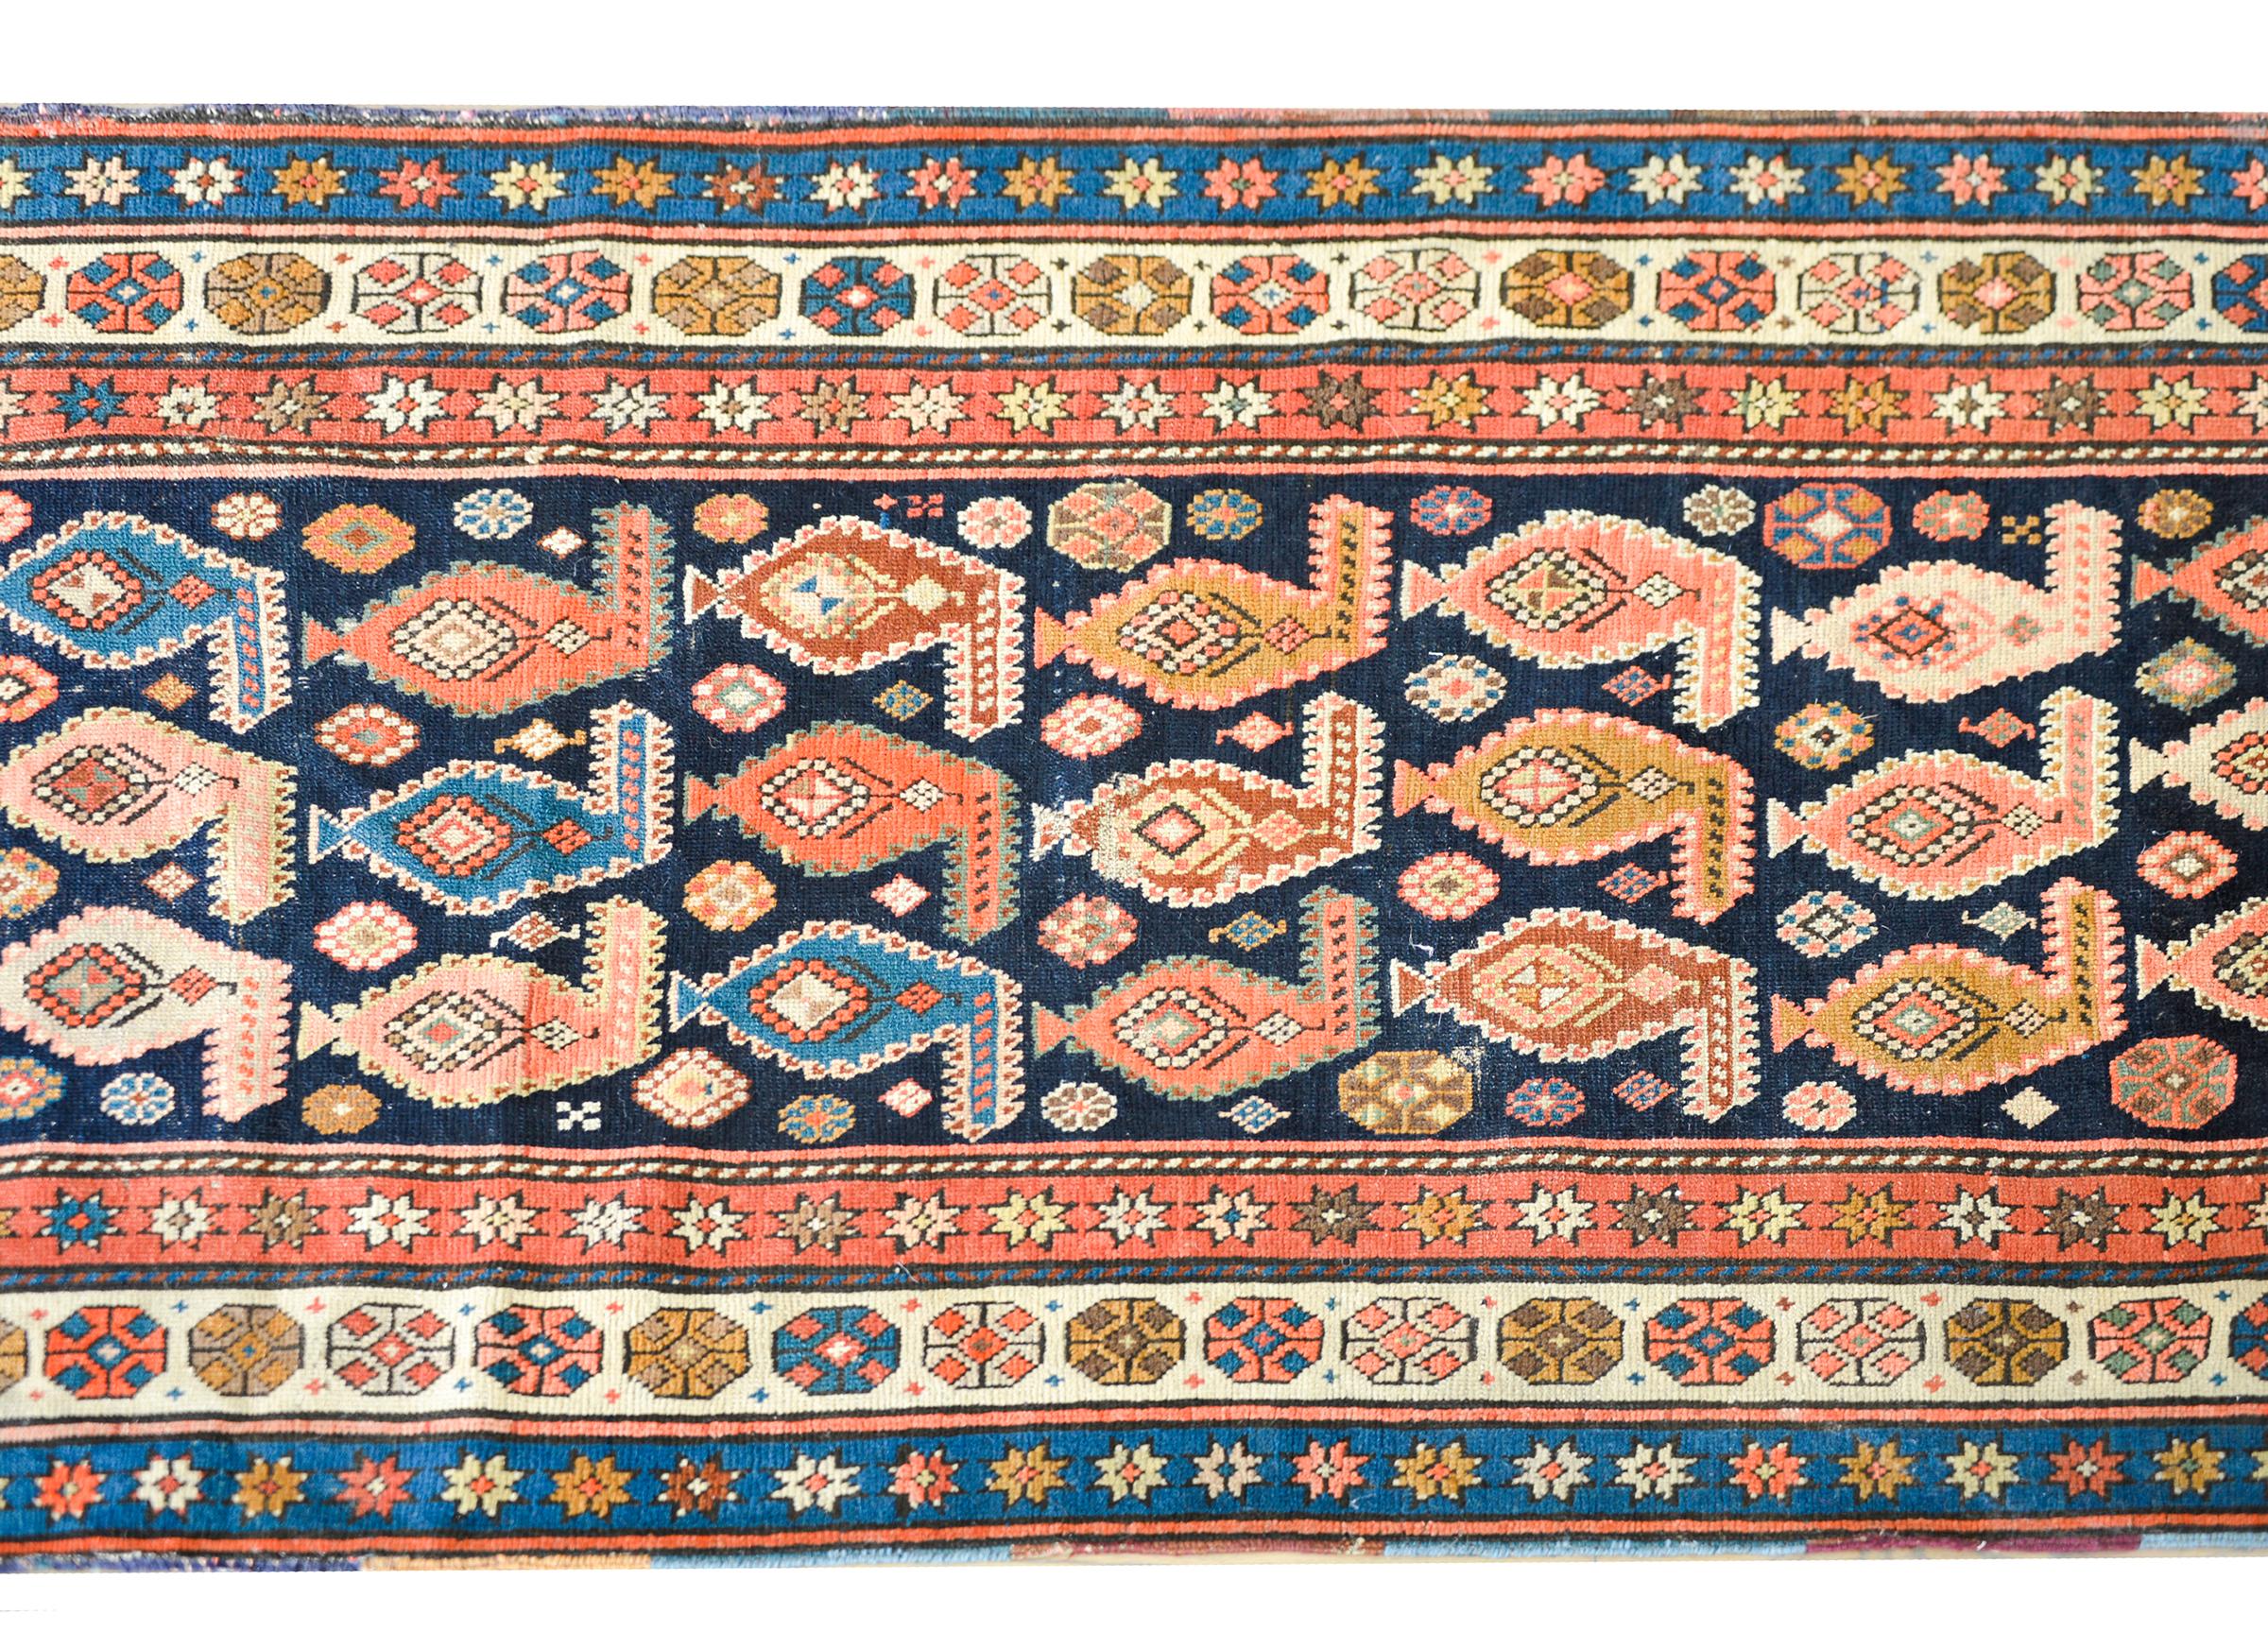 Ein atemberaubender handgeknüpfter persischer Karabagh-Teppich aus dem frühen 20. Jahrhundert mit einem Allover-Muster aus mehrfarbigen Paisleys inmitten eines Feldes aus kleinen stilisierten Blumen auf einem dunklen indigoblauen Hintergrund. Die